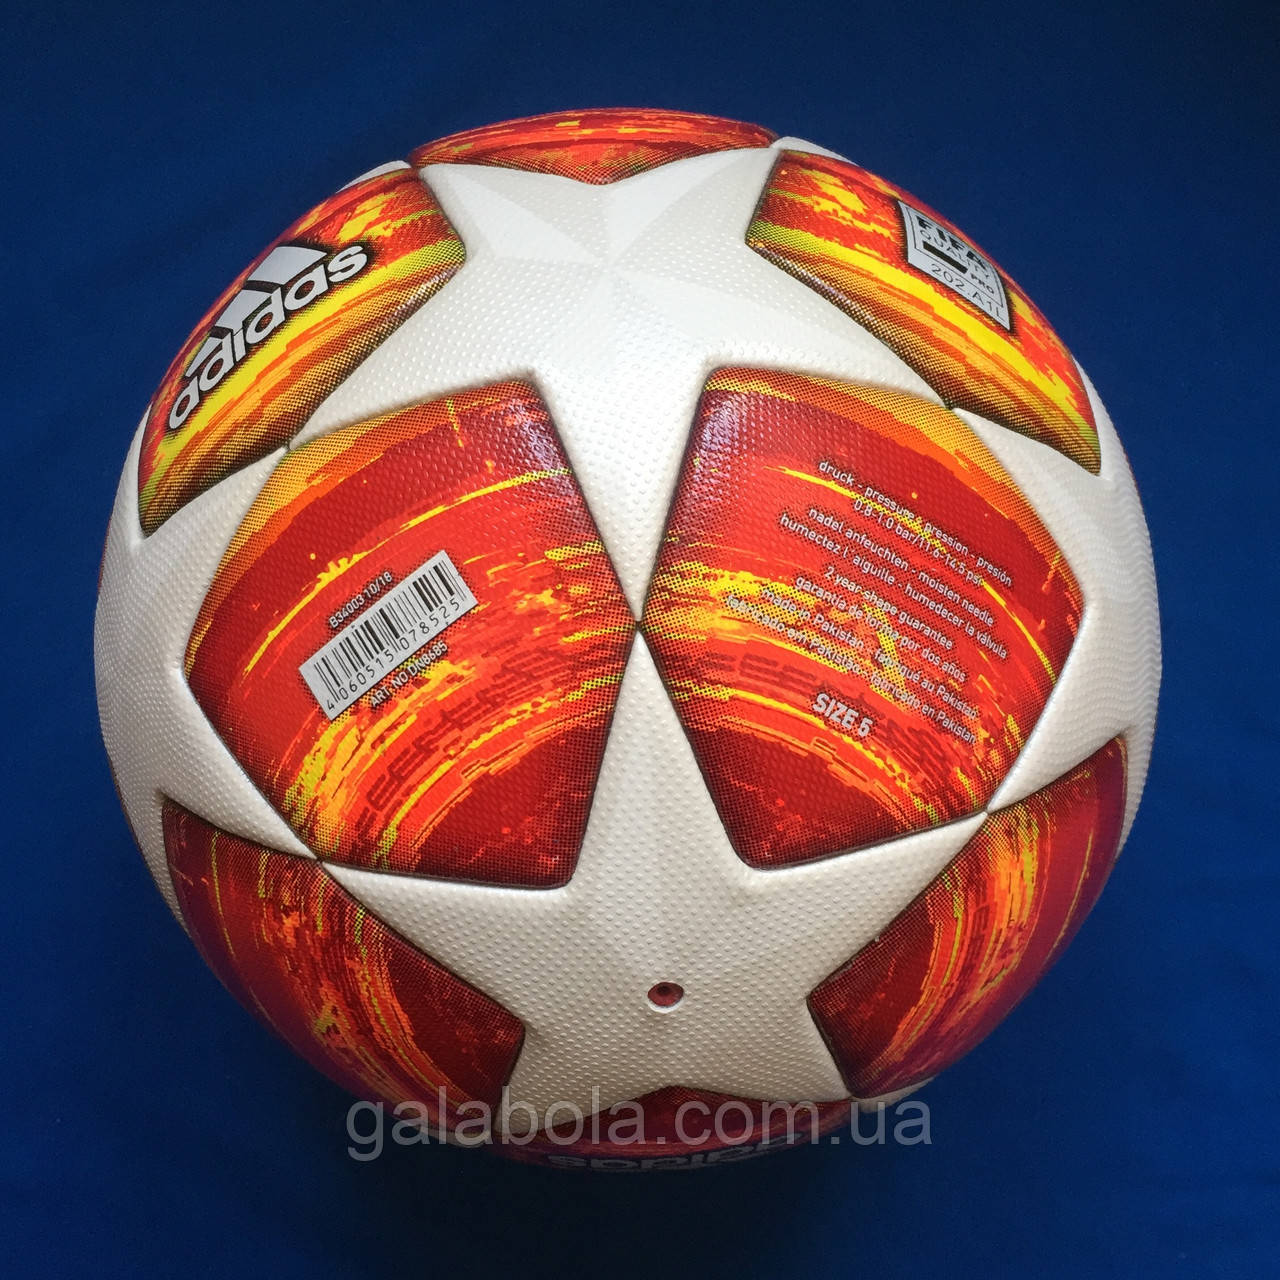 Купити М'яч футбольний Finale Madrid 19 OMB DN8685 (розмір 5), ціна 3600 ₴ - Prom.ua (ID# 872001984)